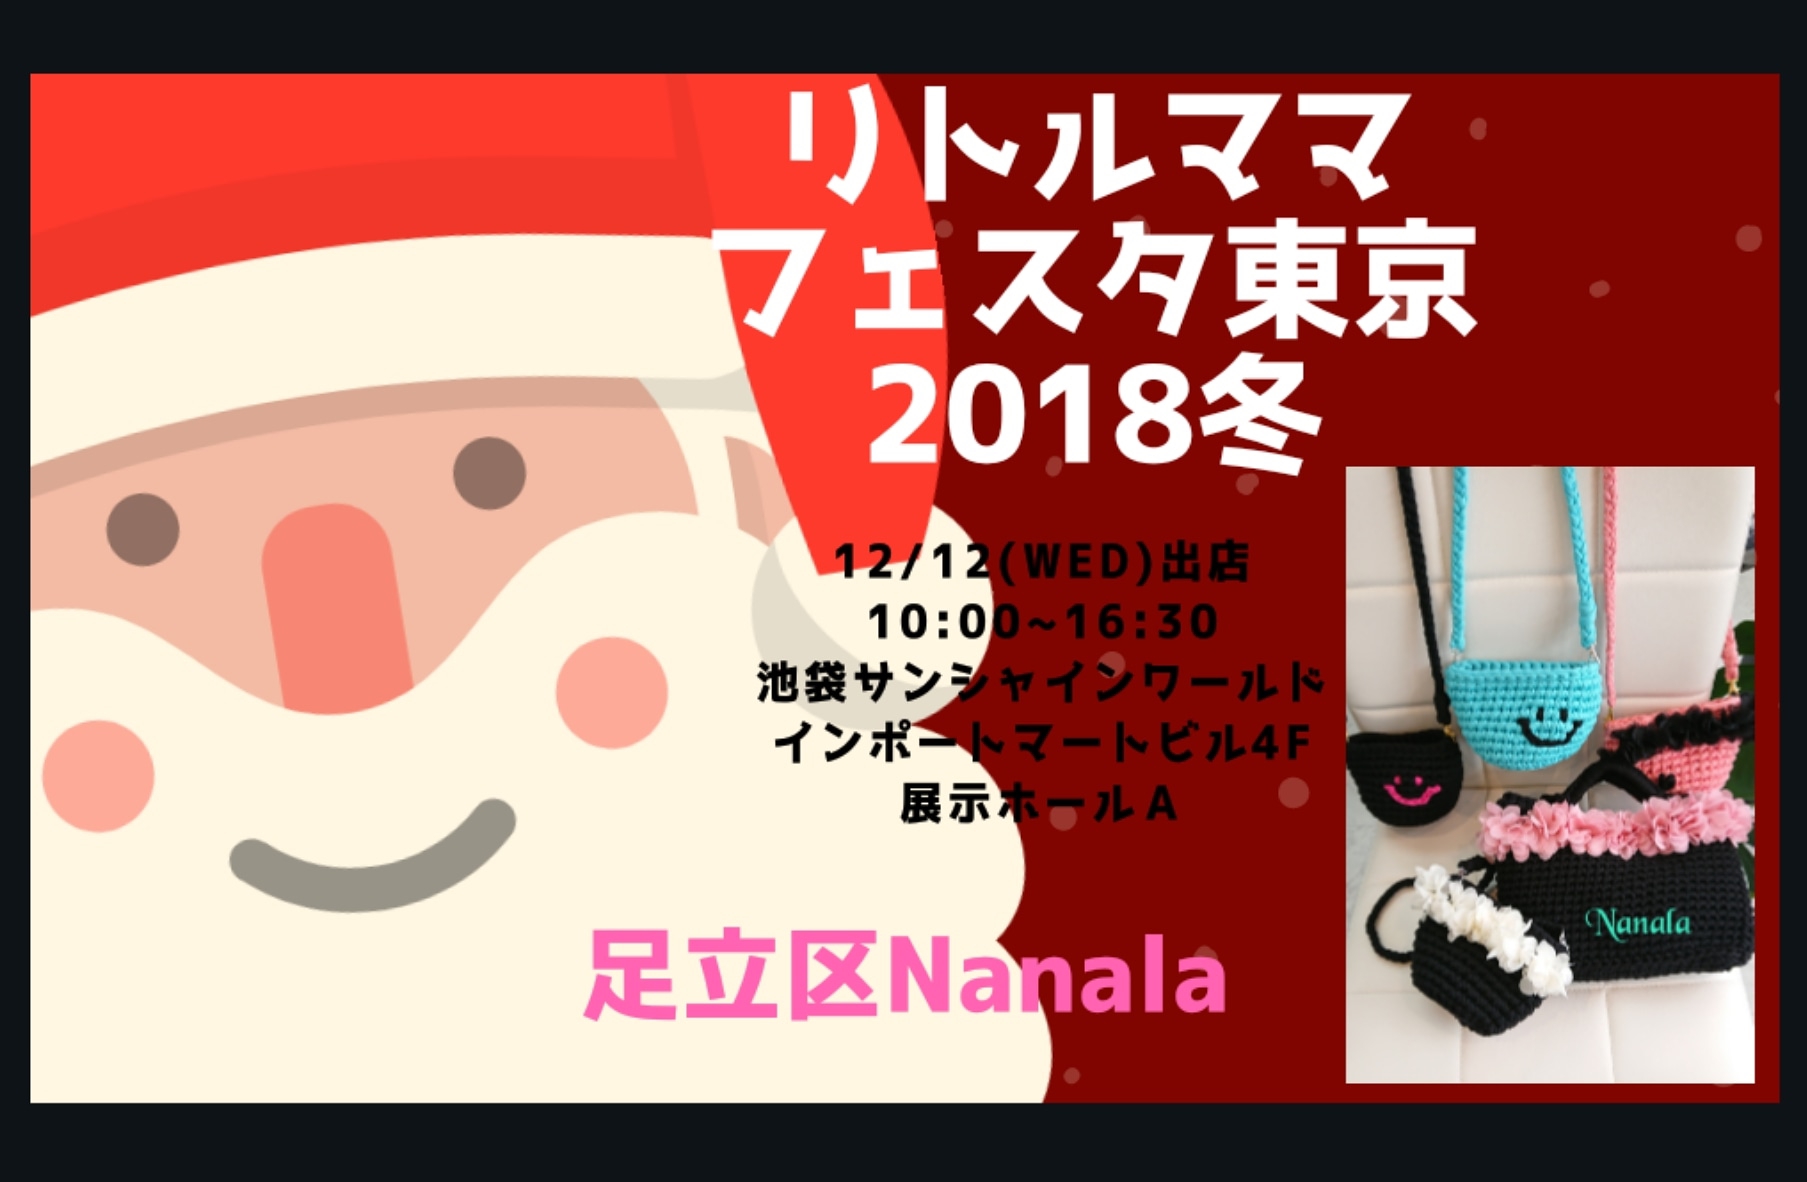 リトルママフェスタ東京18冬 出店します Nanala